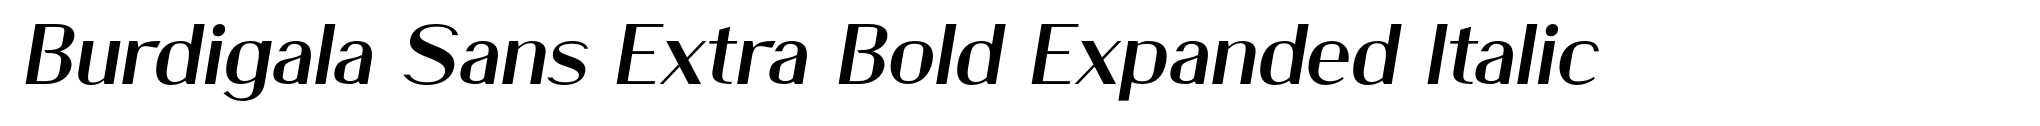 Burdigala Sans Extra Bold Expanded Italic image